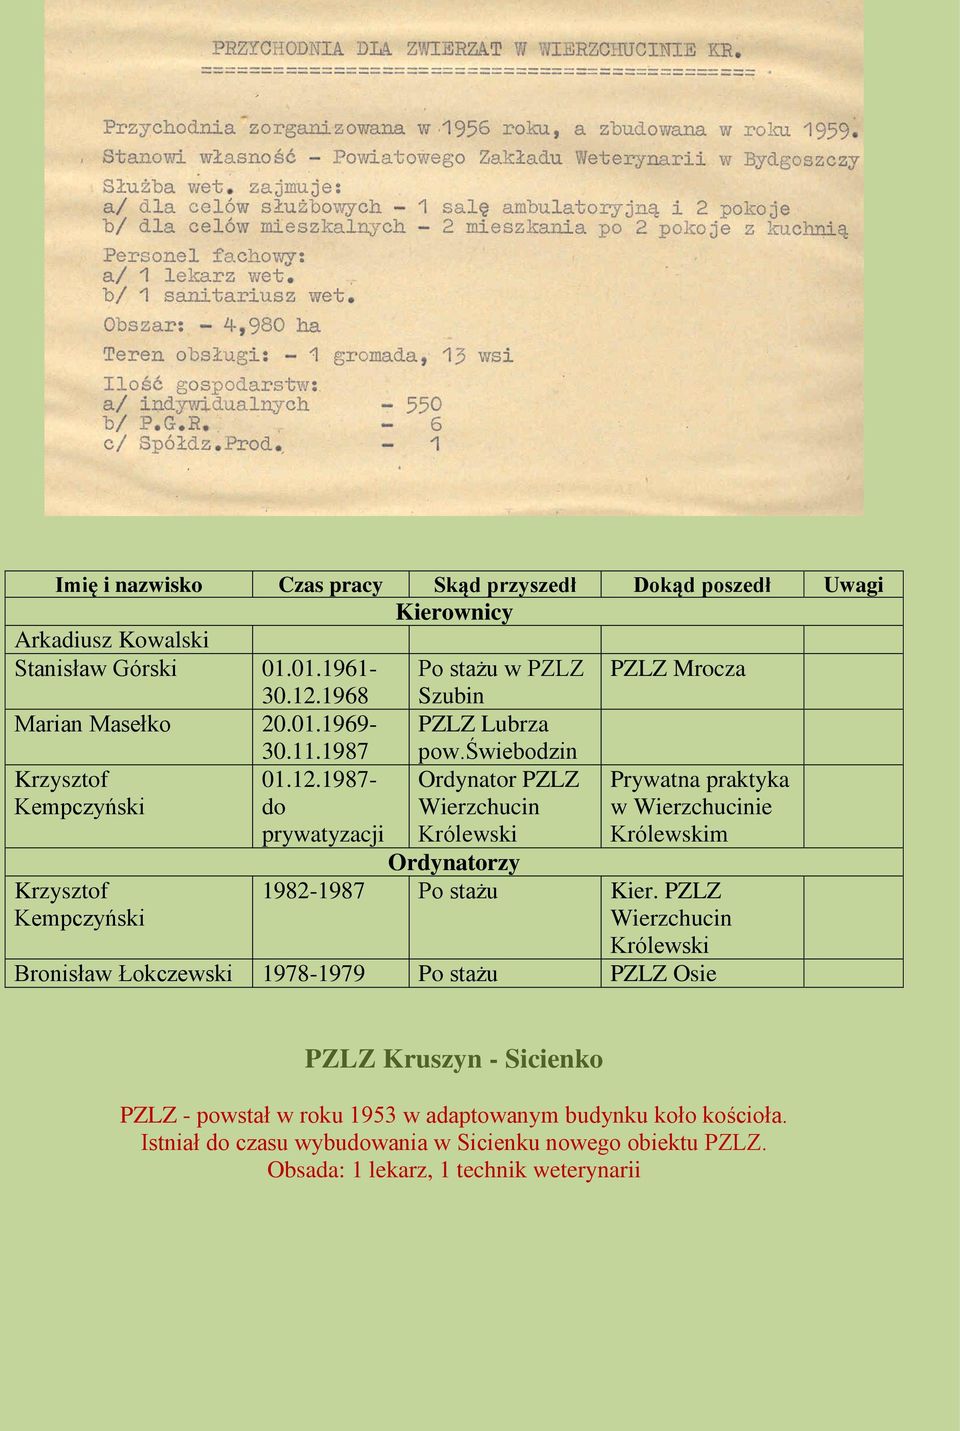 świebodzin Ordynator PZLZ Wierzchucin Królewski Prywatna praktyka w Wierzchucinie Królewskim Ordynatorzy Krzysztof Kempczyński 1982-1987 Po stażu Kier.